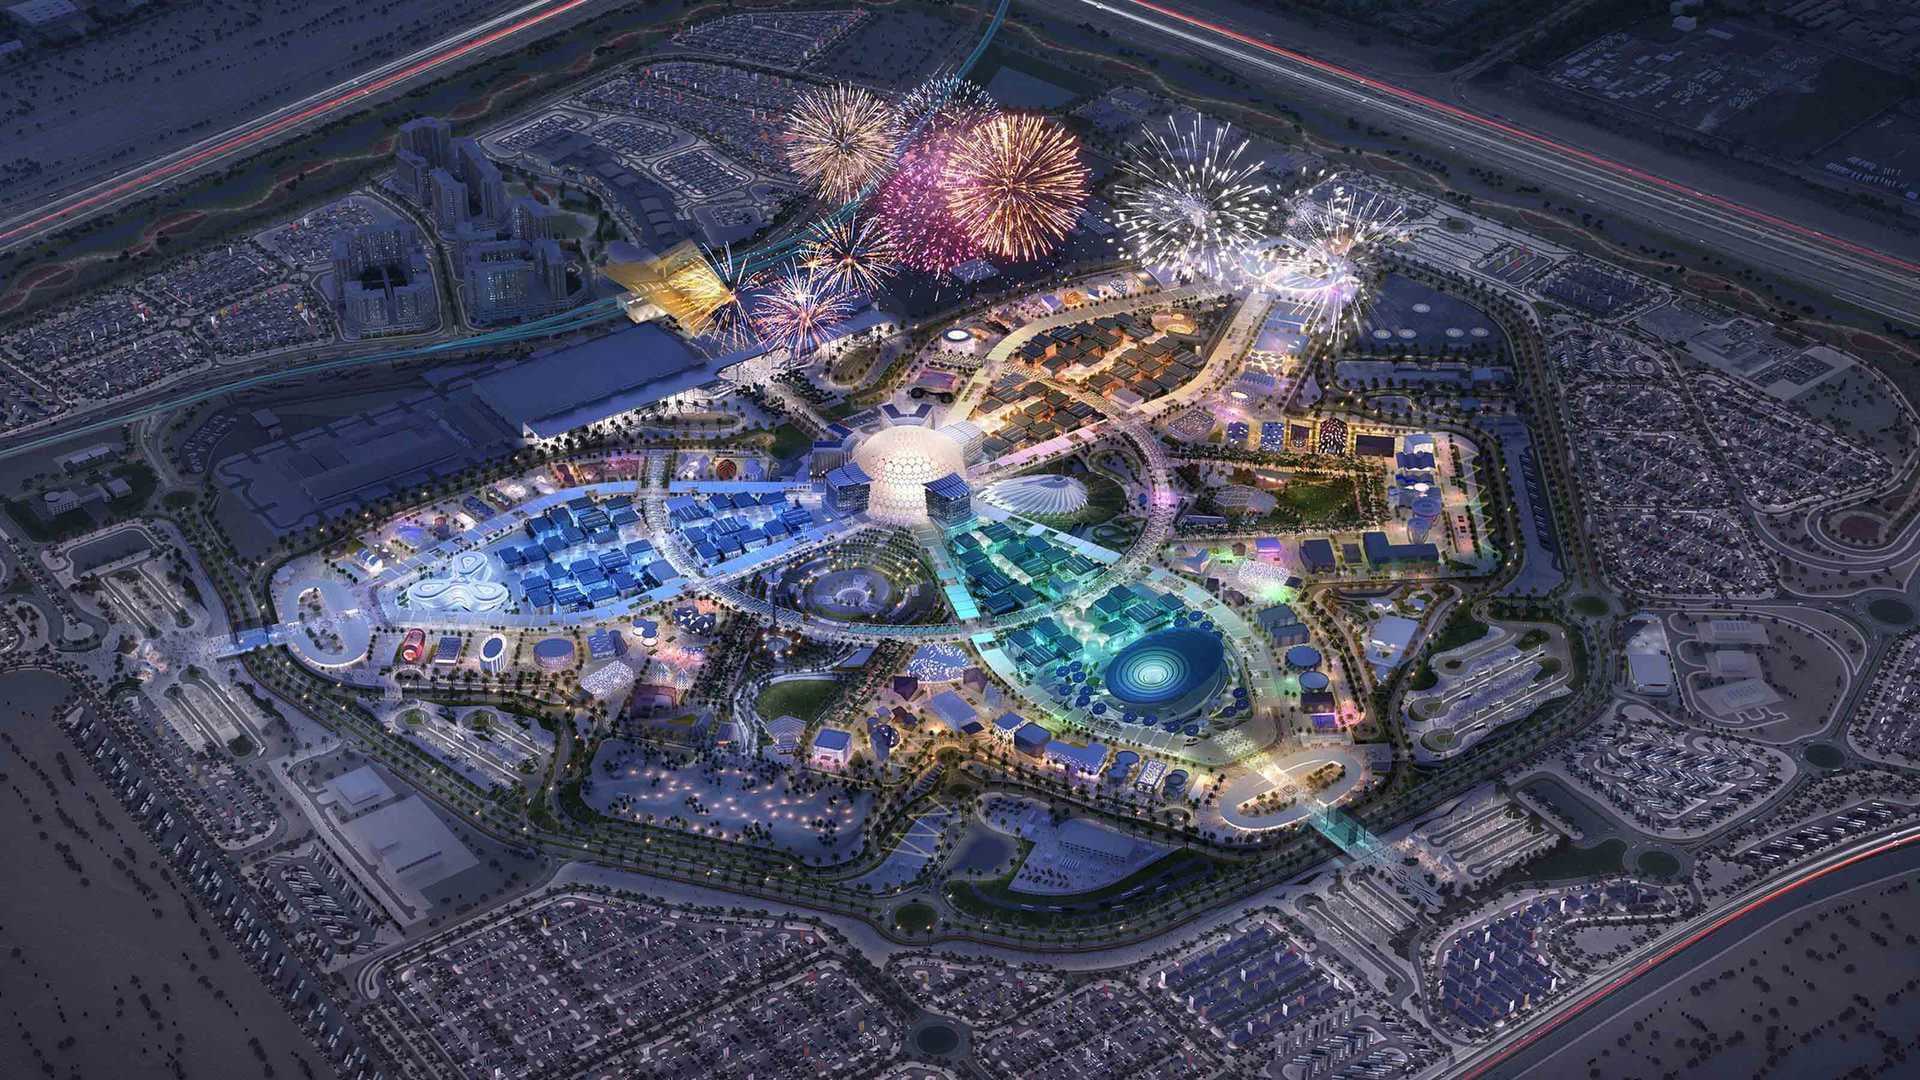 Sheikh Mohammed bin Rashid Introduces Expo City Dubai